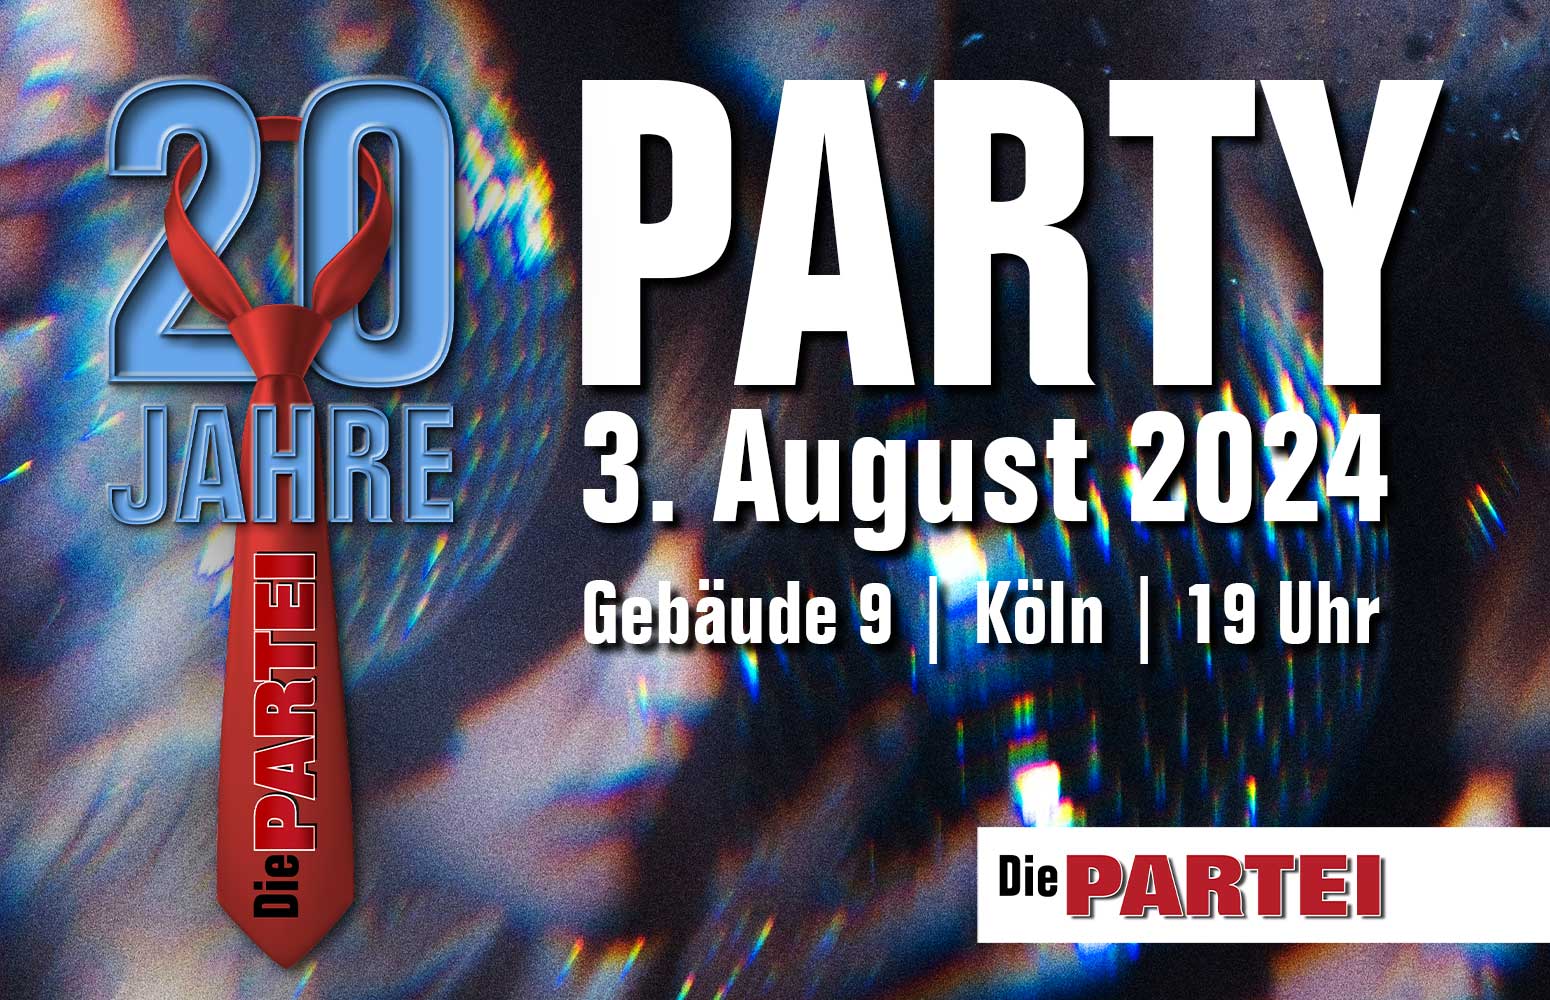 Die PARTEI 20Jahre Party Gebäude 9 Köln